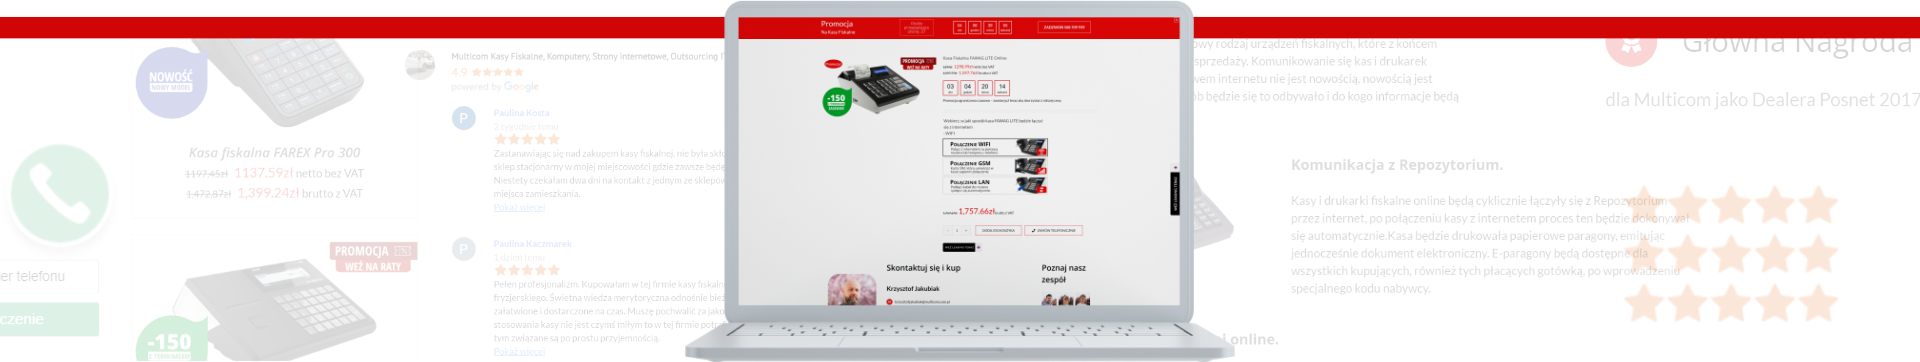 sklepy internetowe Wodzisław Śląski stworzone z myślą o efektywnej sprzedaży